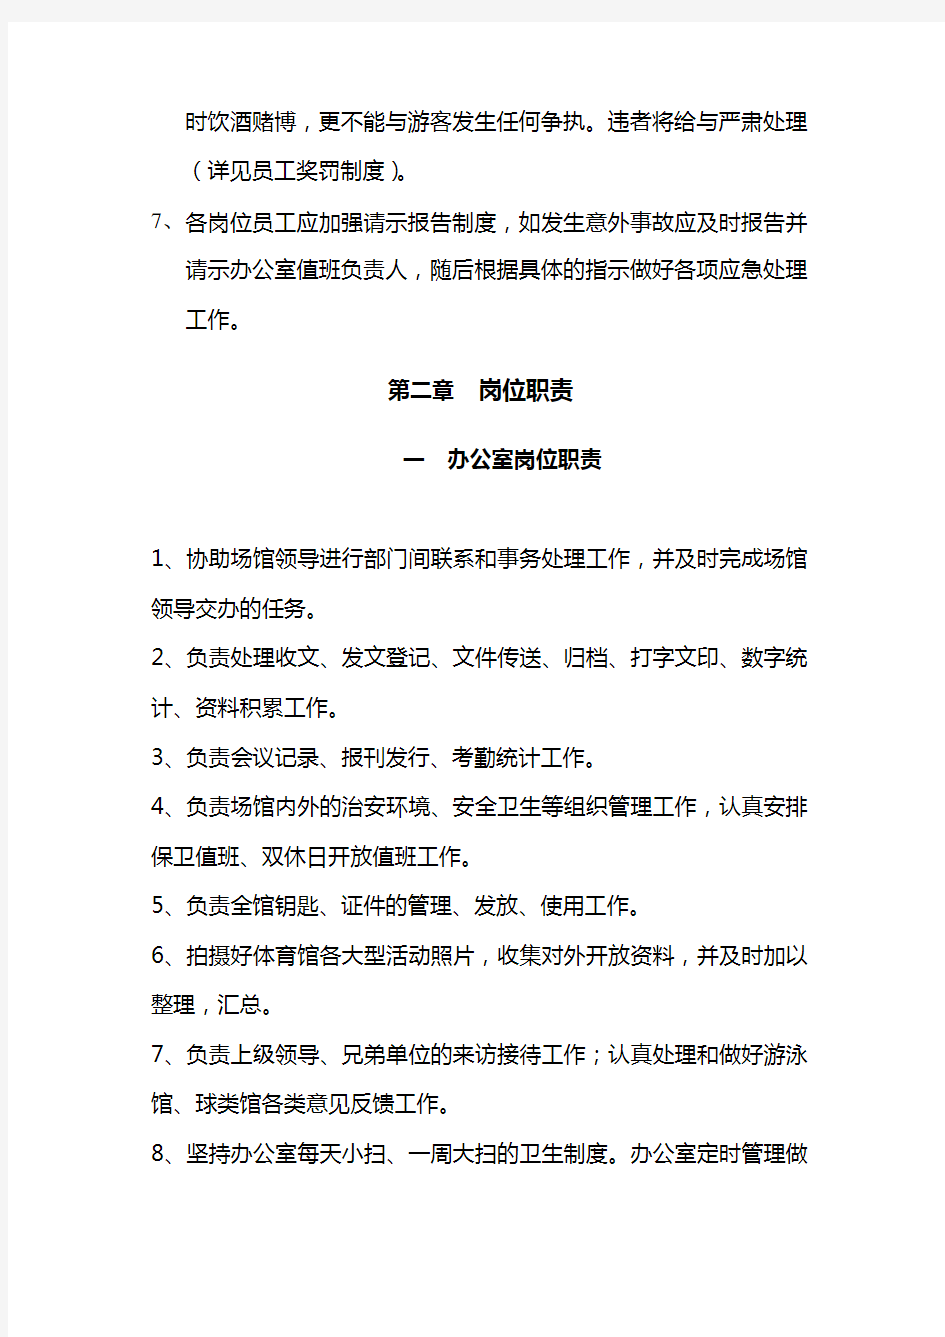 上海财经大学体育馆管理规章制度